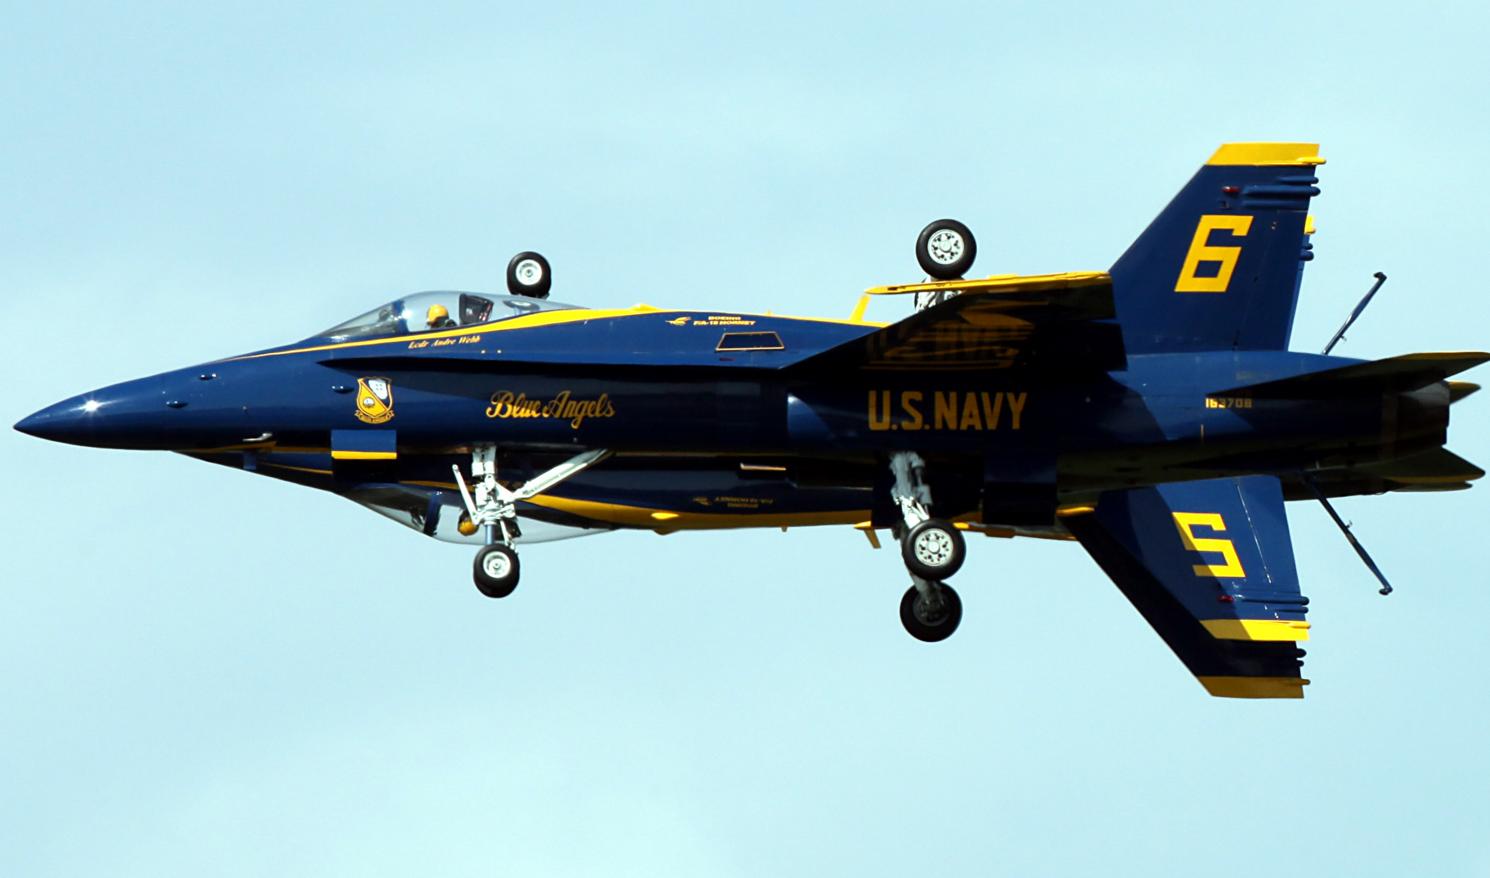 Фрагмент выступления демонстрационно-пилотажной группы ВМС США Blue Angels на авиационной станции КМП США Beaufort, шт. Южная Каролина, 27 апреля 2019 года 